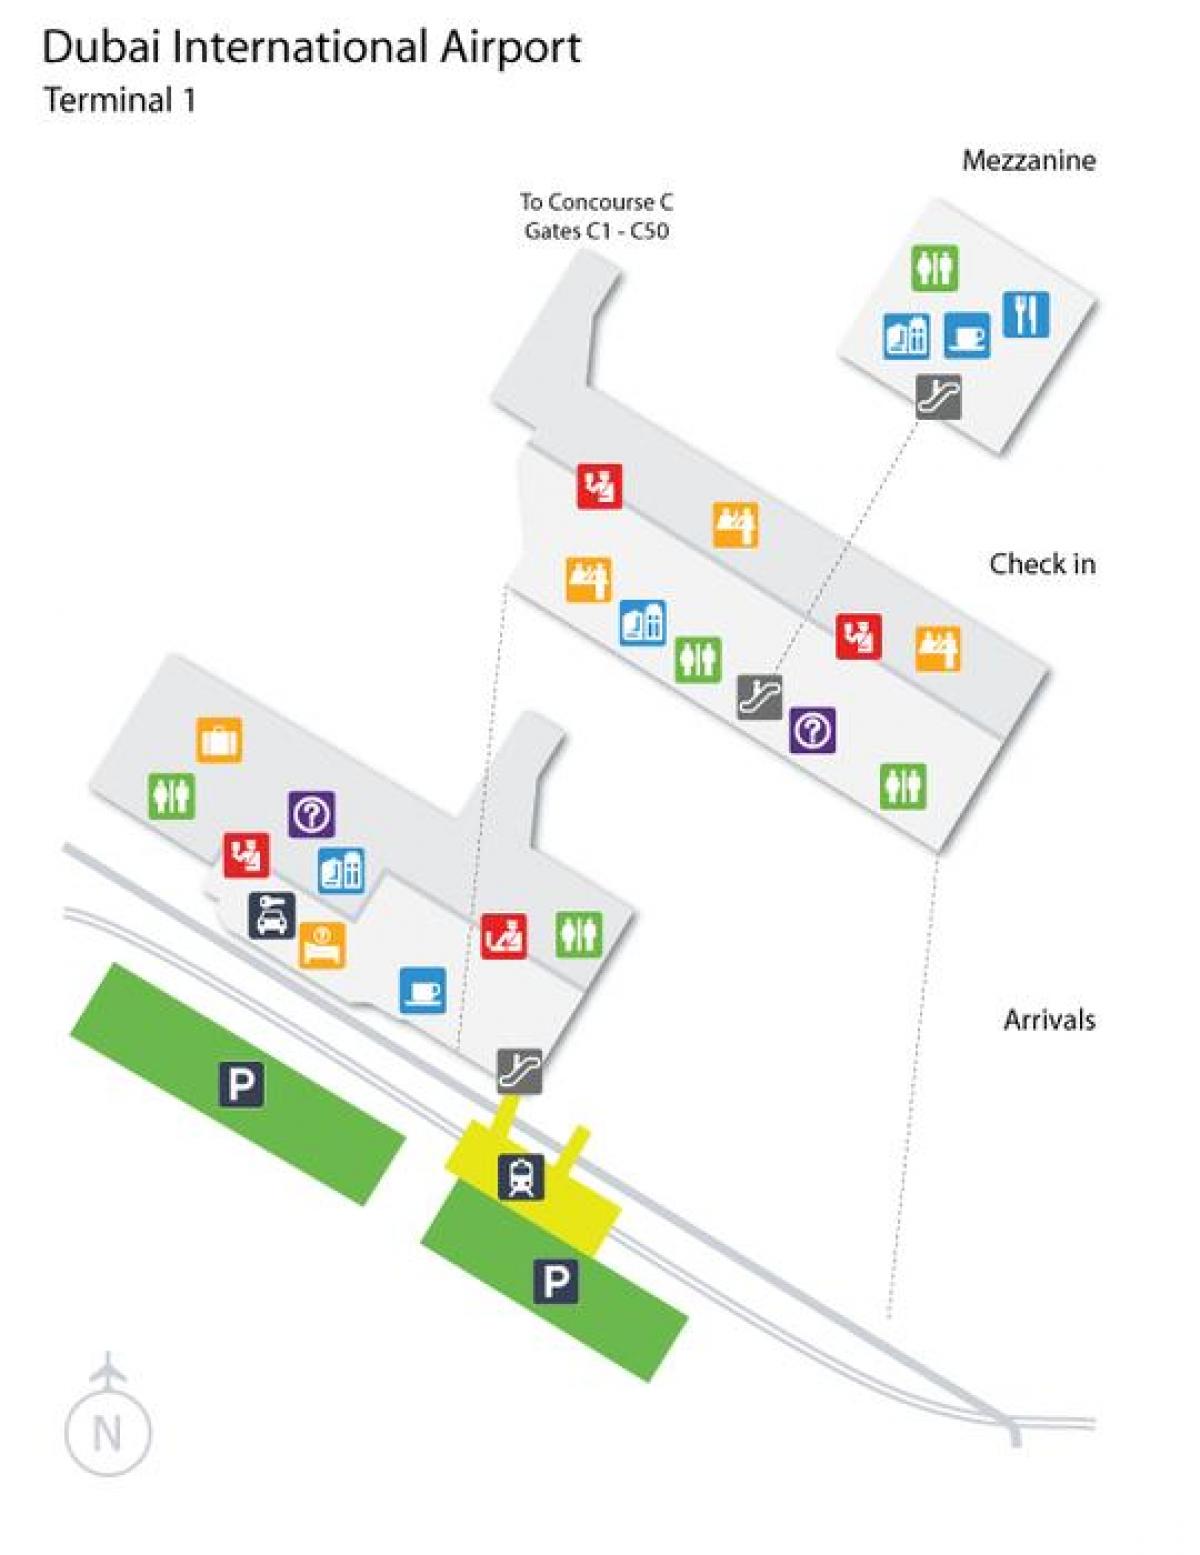 दुबई हवाई अड्डे के टर्मिनल 1 स्थान का नक्शा